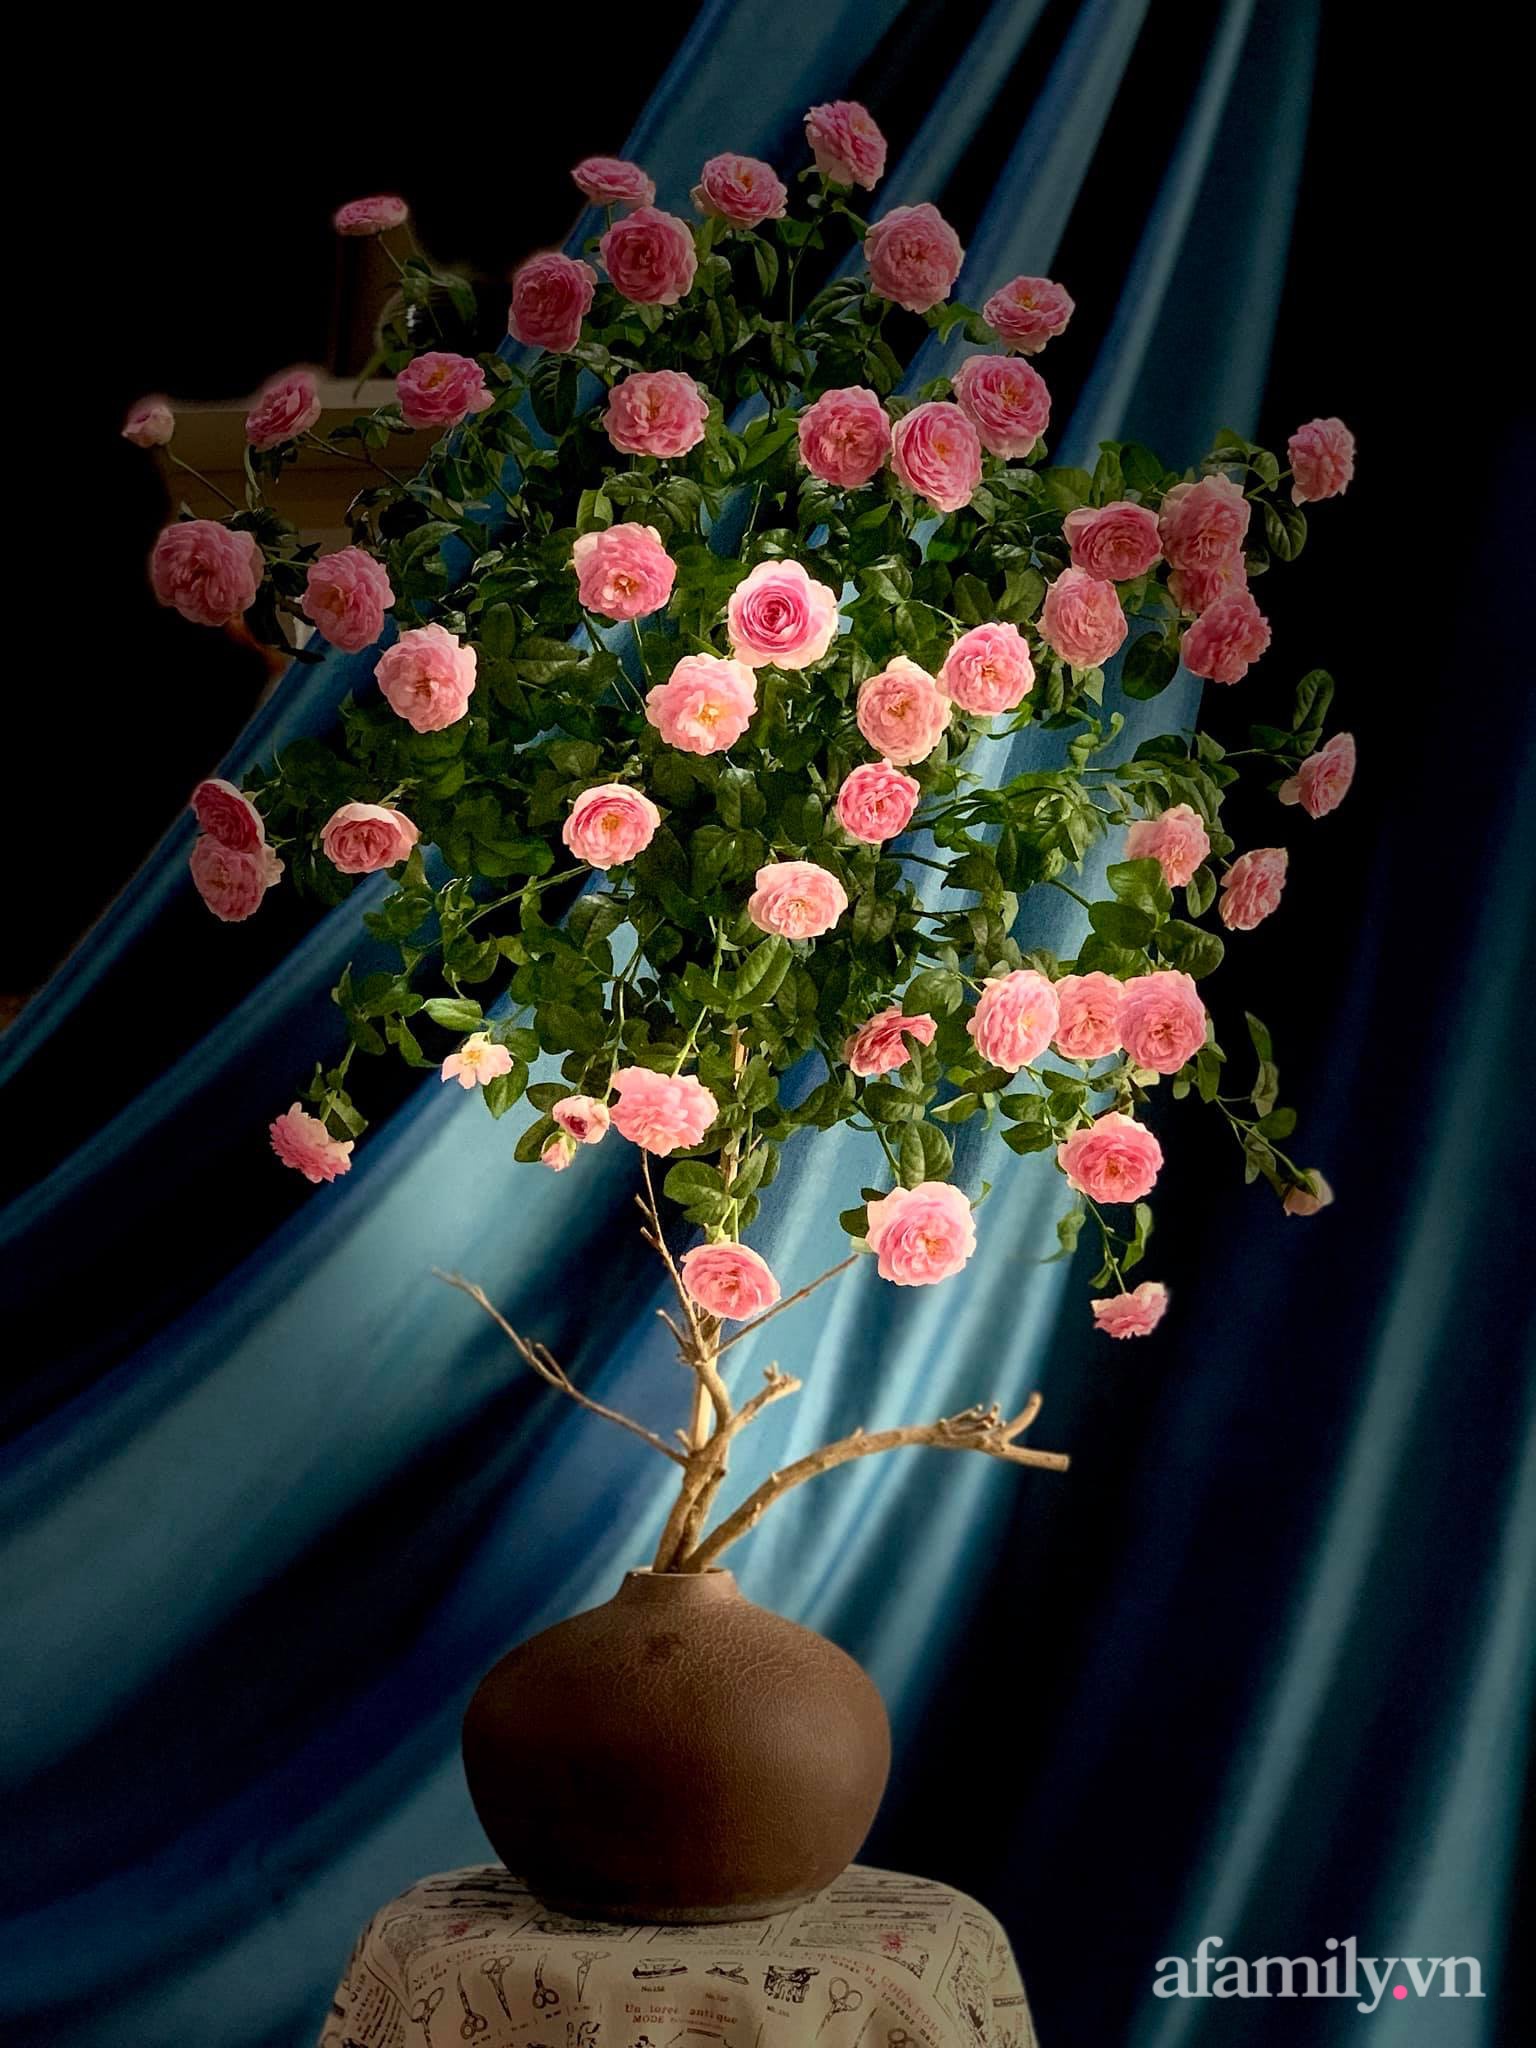 Chọn hồng cắt cành, người phụ nữ Hà Thành cắm kiểu tree rose đẹp duyên dáng không thể rời mắt - Ảnh 5.